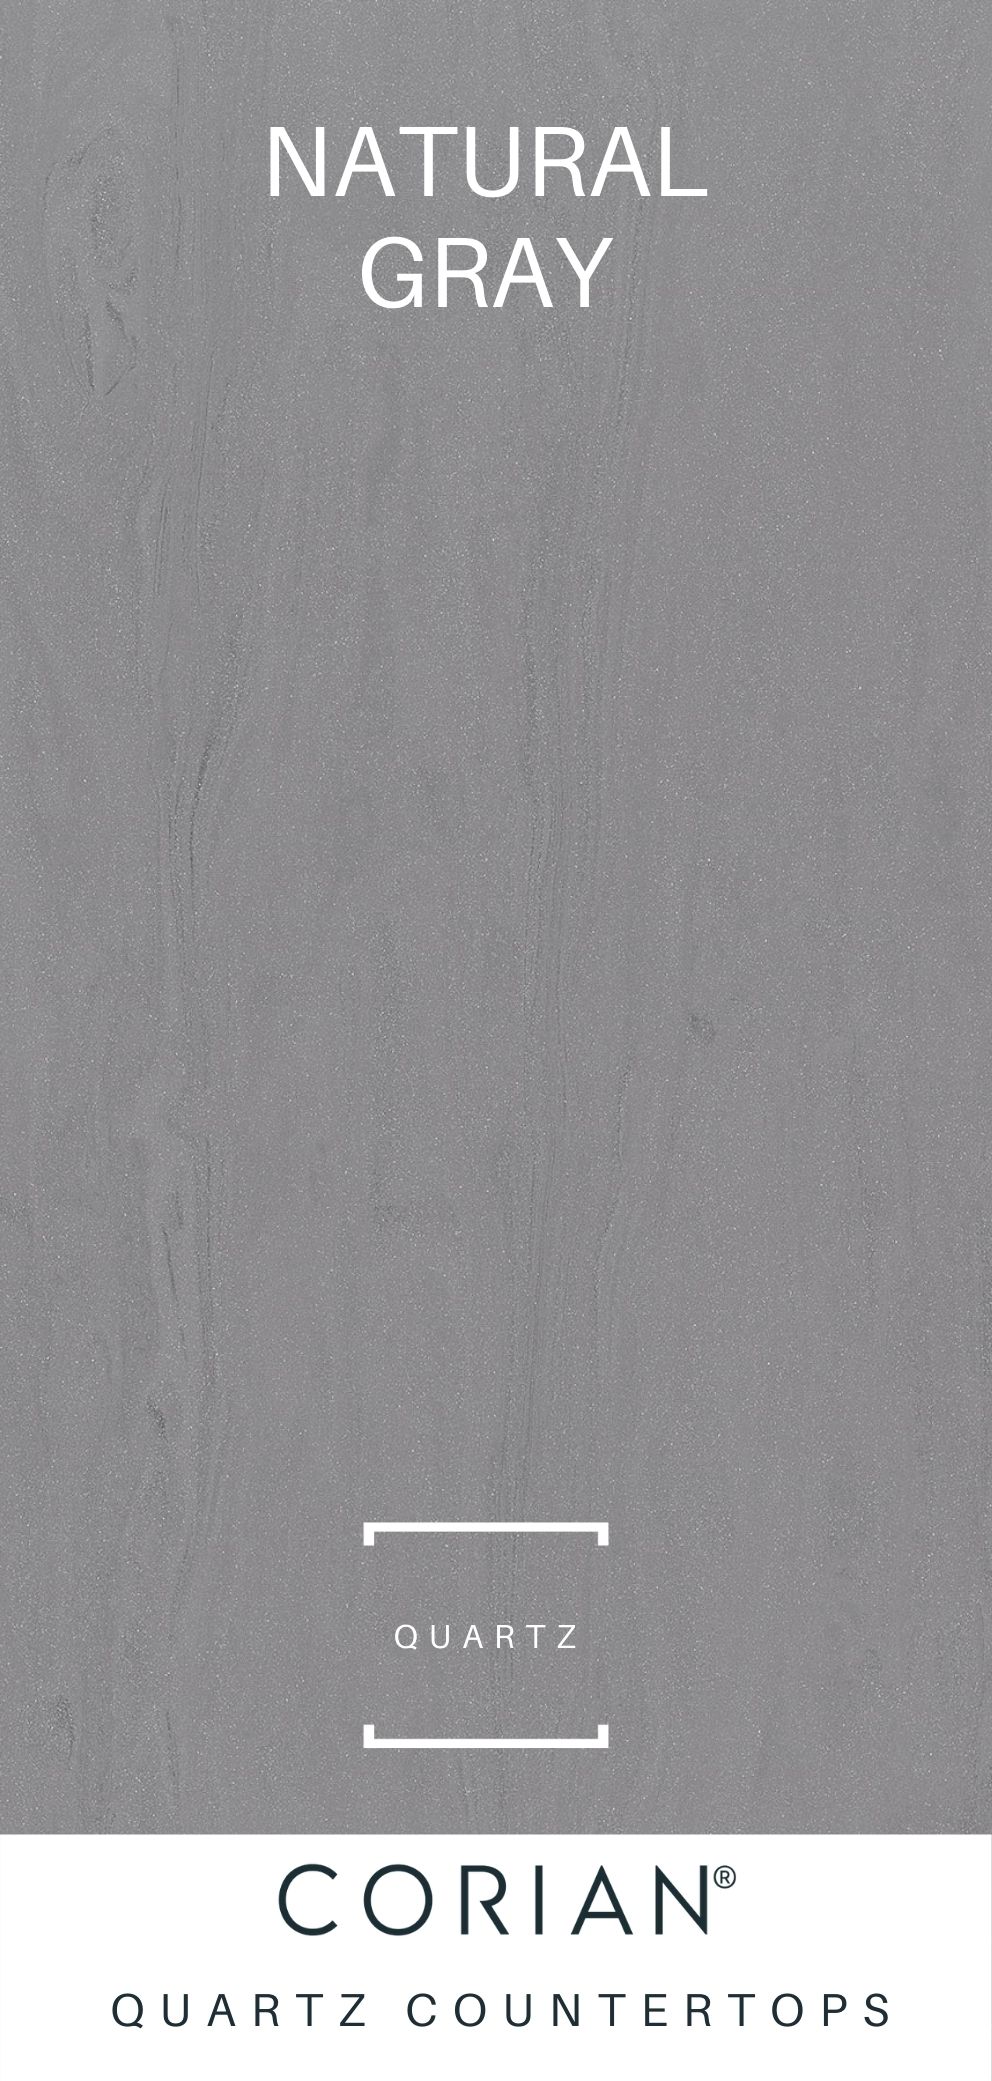 Corian Quartz Countertops Natural Gray